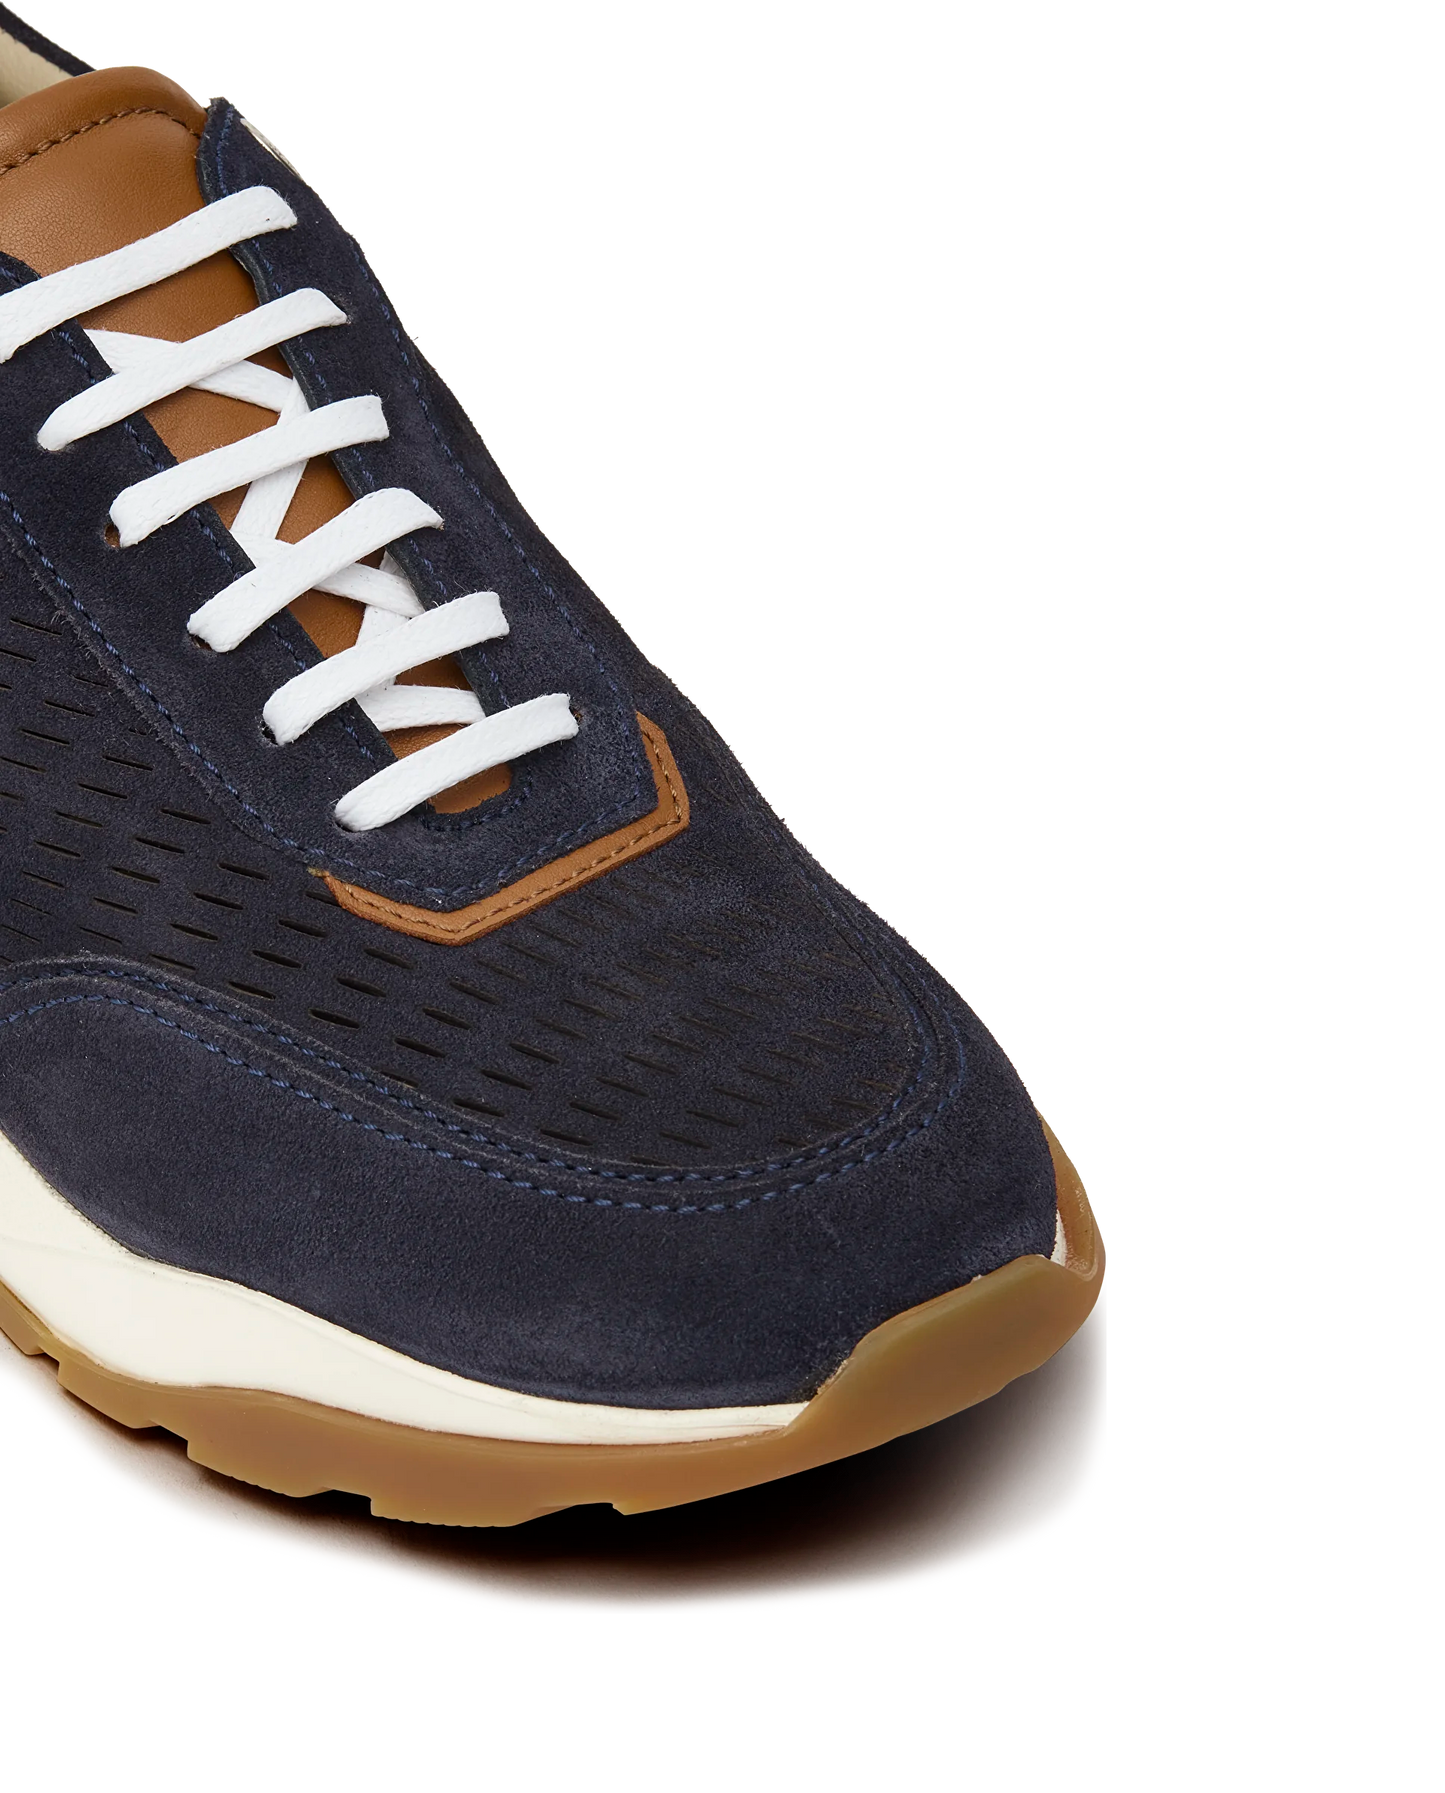 LOTTUSSE | أحذية رياضية لباس الرجال | OSAKA AZUL MARINO | أزرق